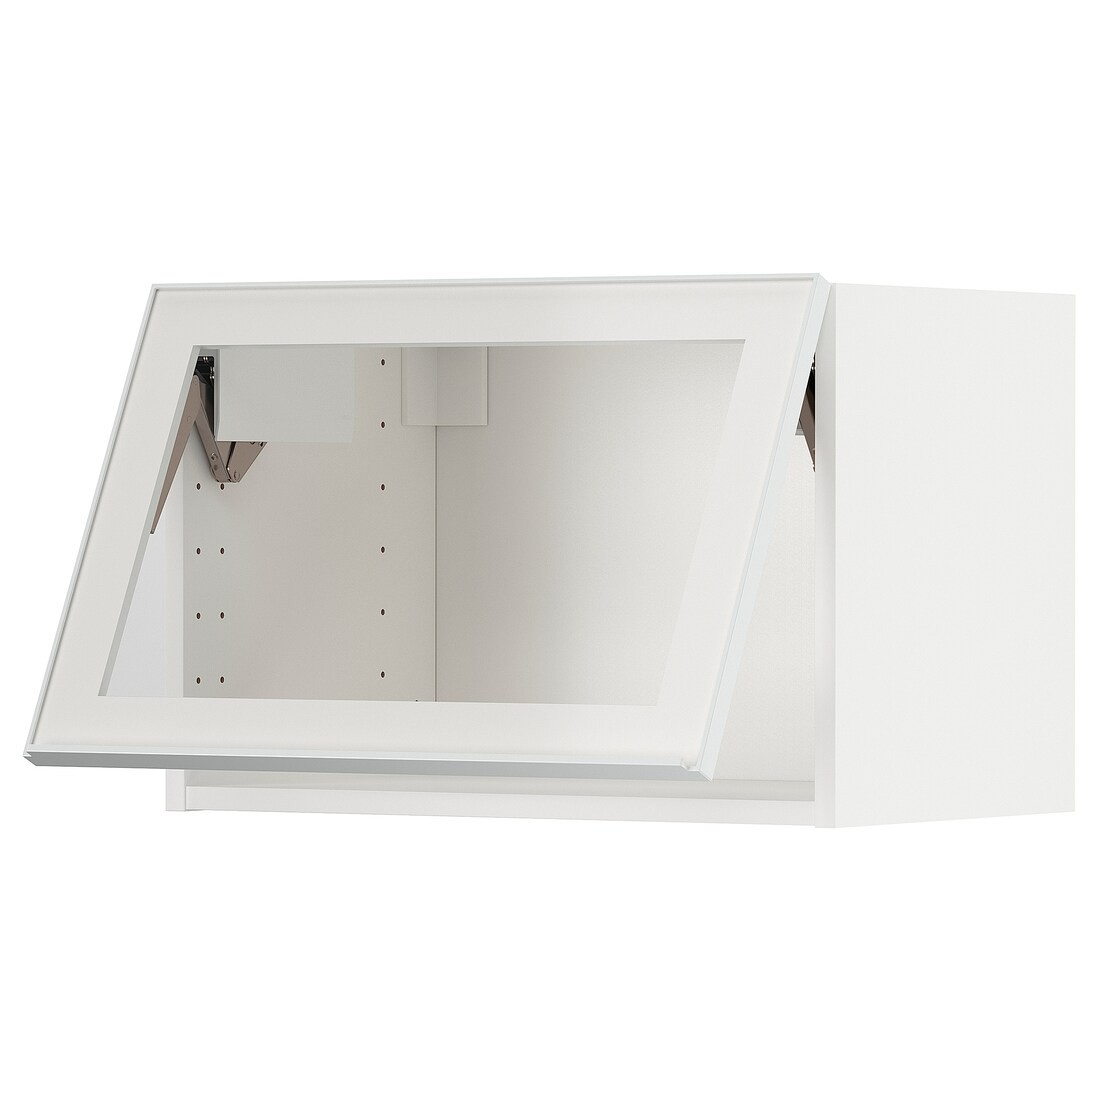 METOD МЕТОД Навесной горизонтальный шкаф, белый / Hesta белое прозрачное стекло, 60x40 см